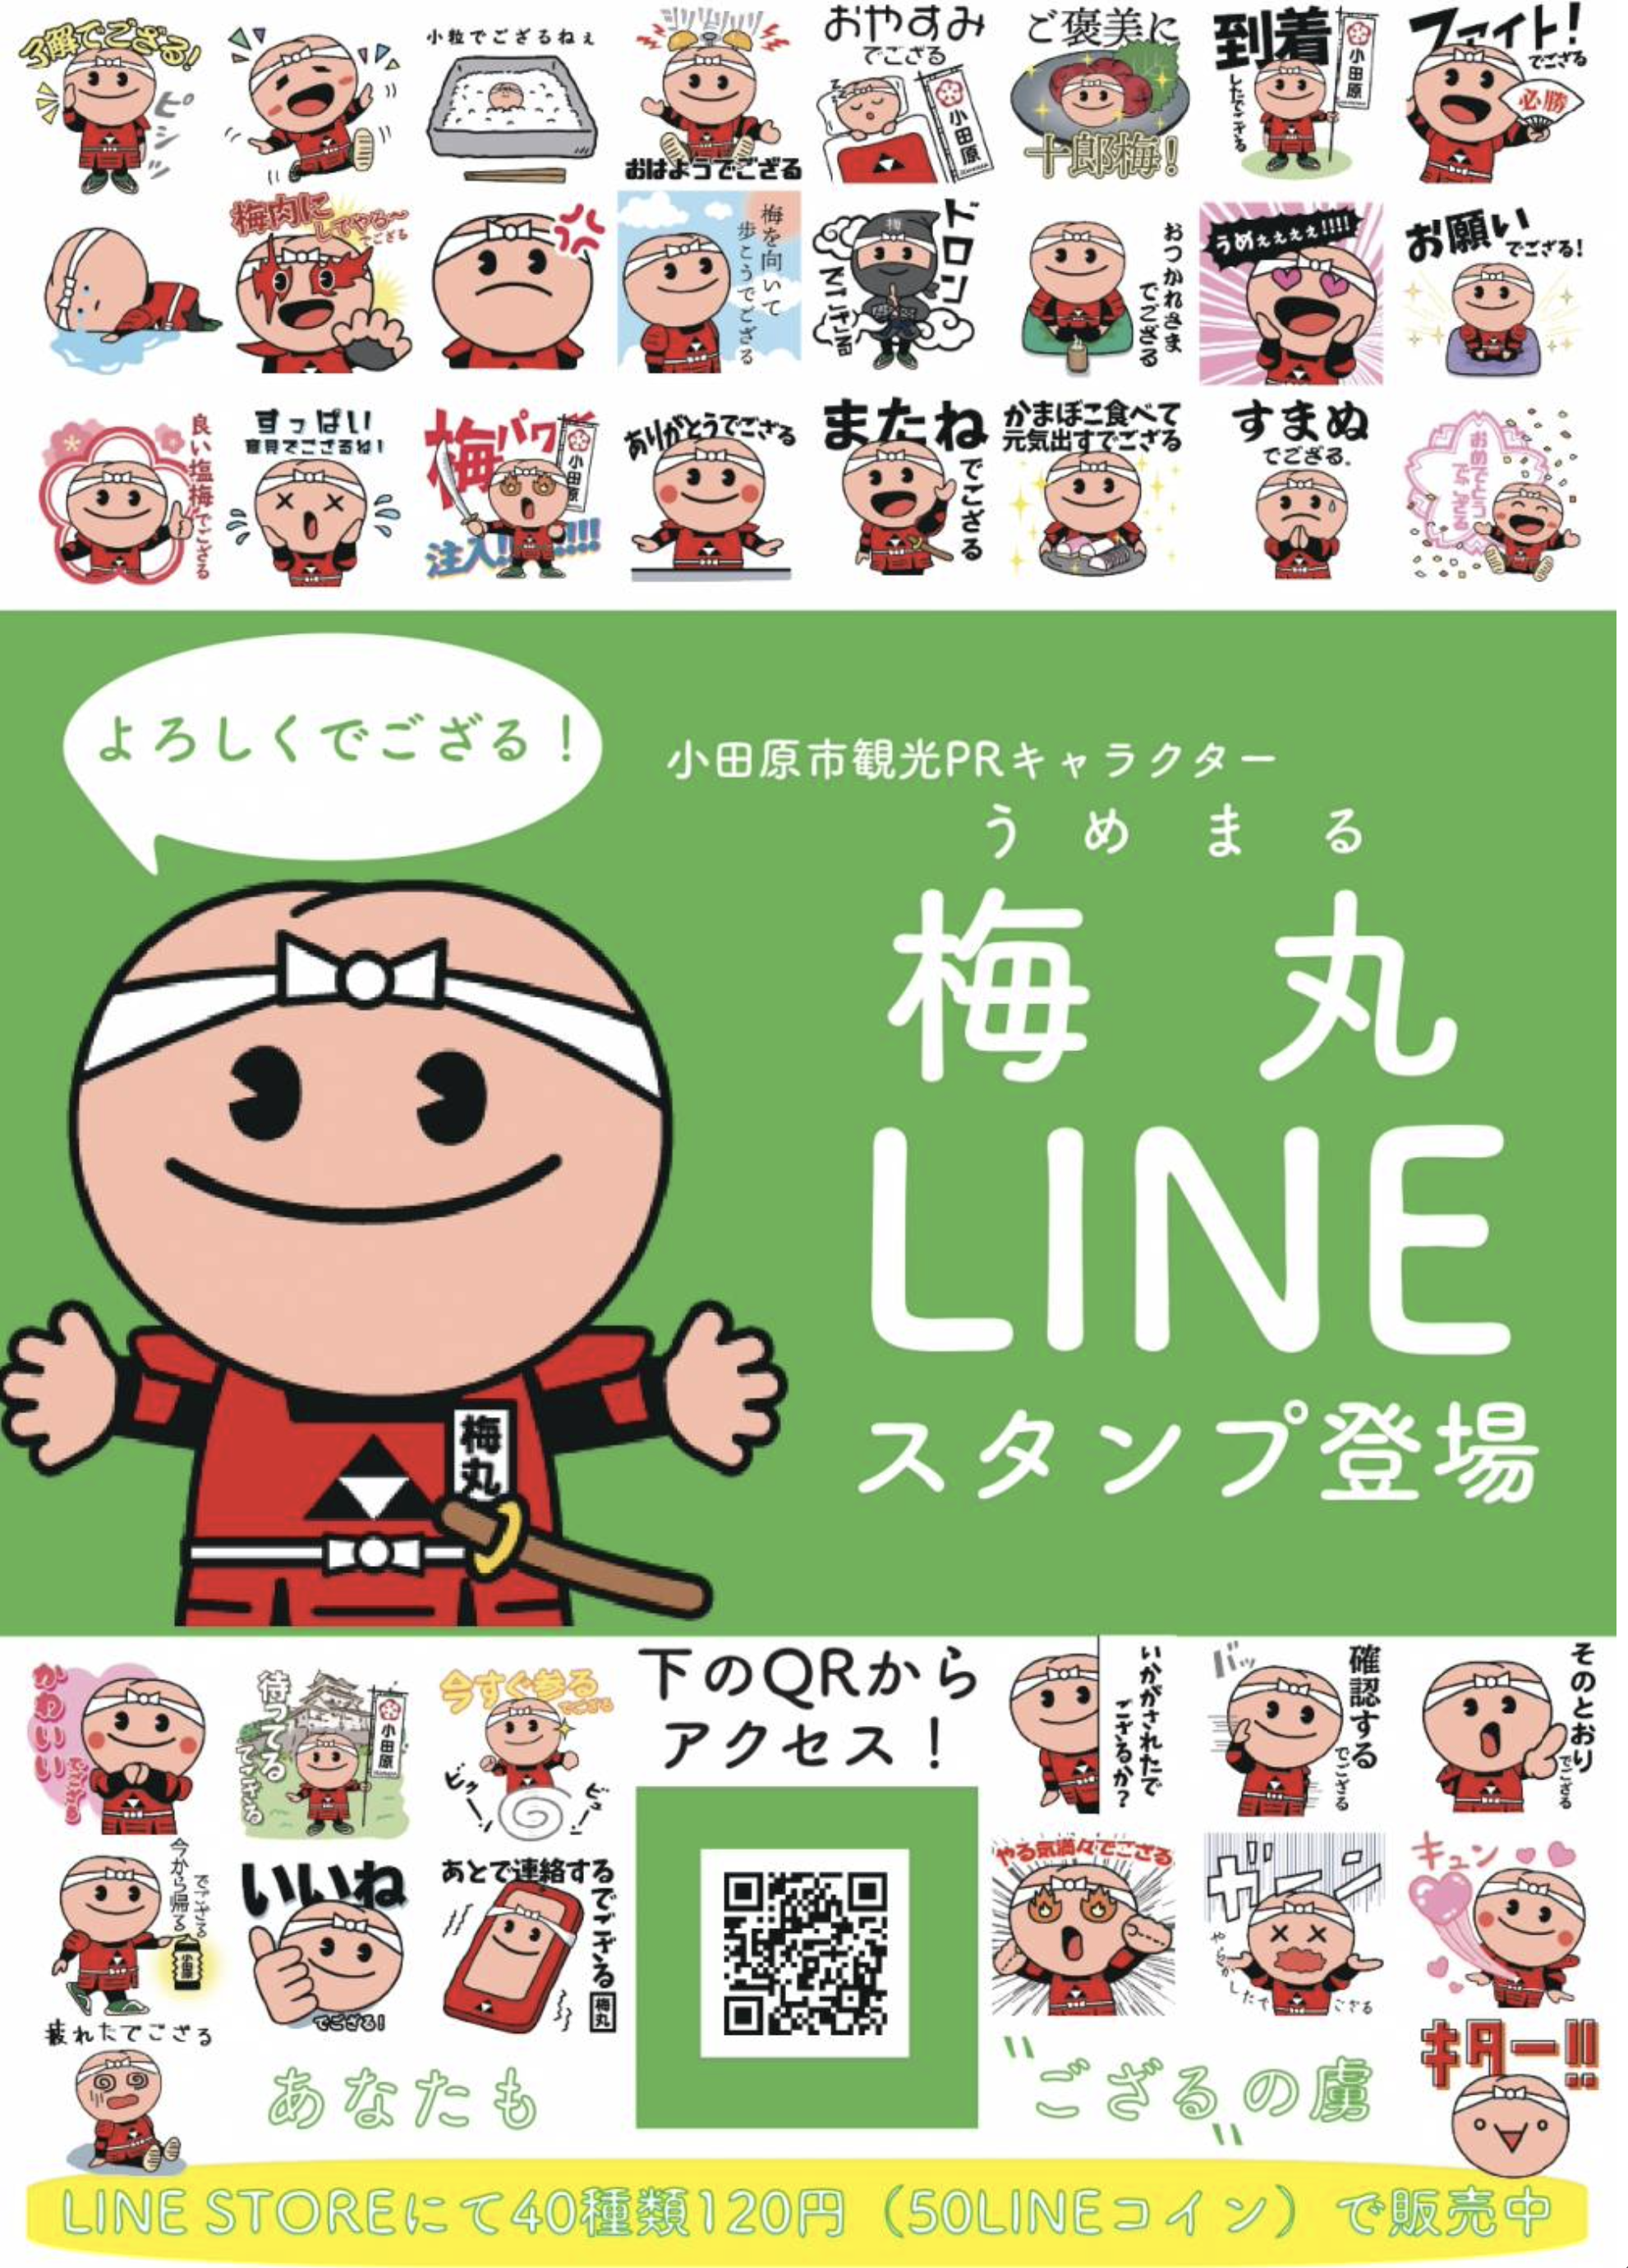 odawara-umemaru-line-stamp